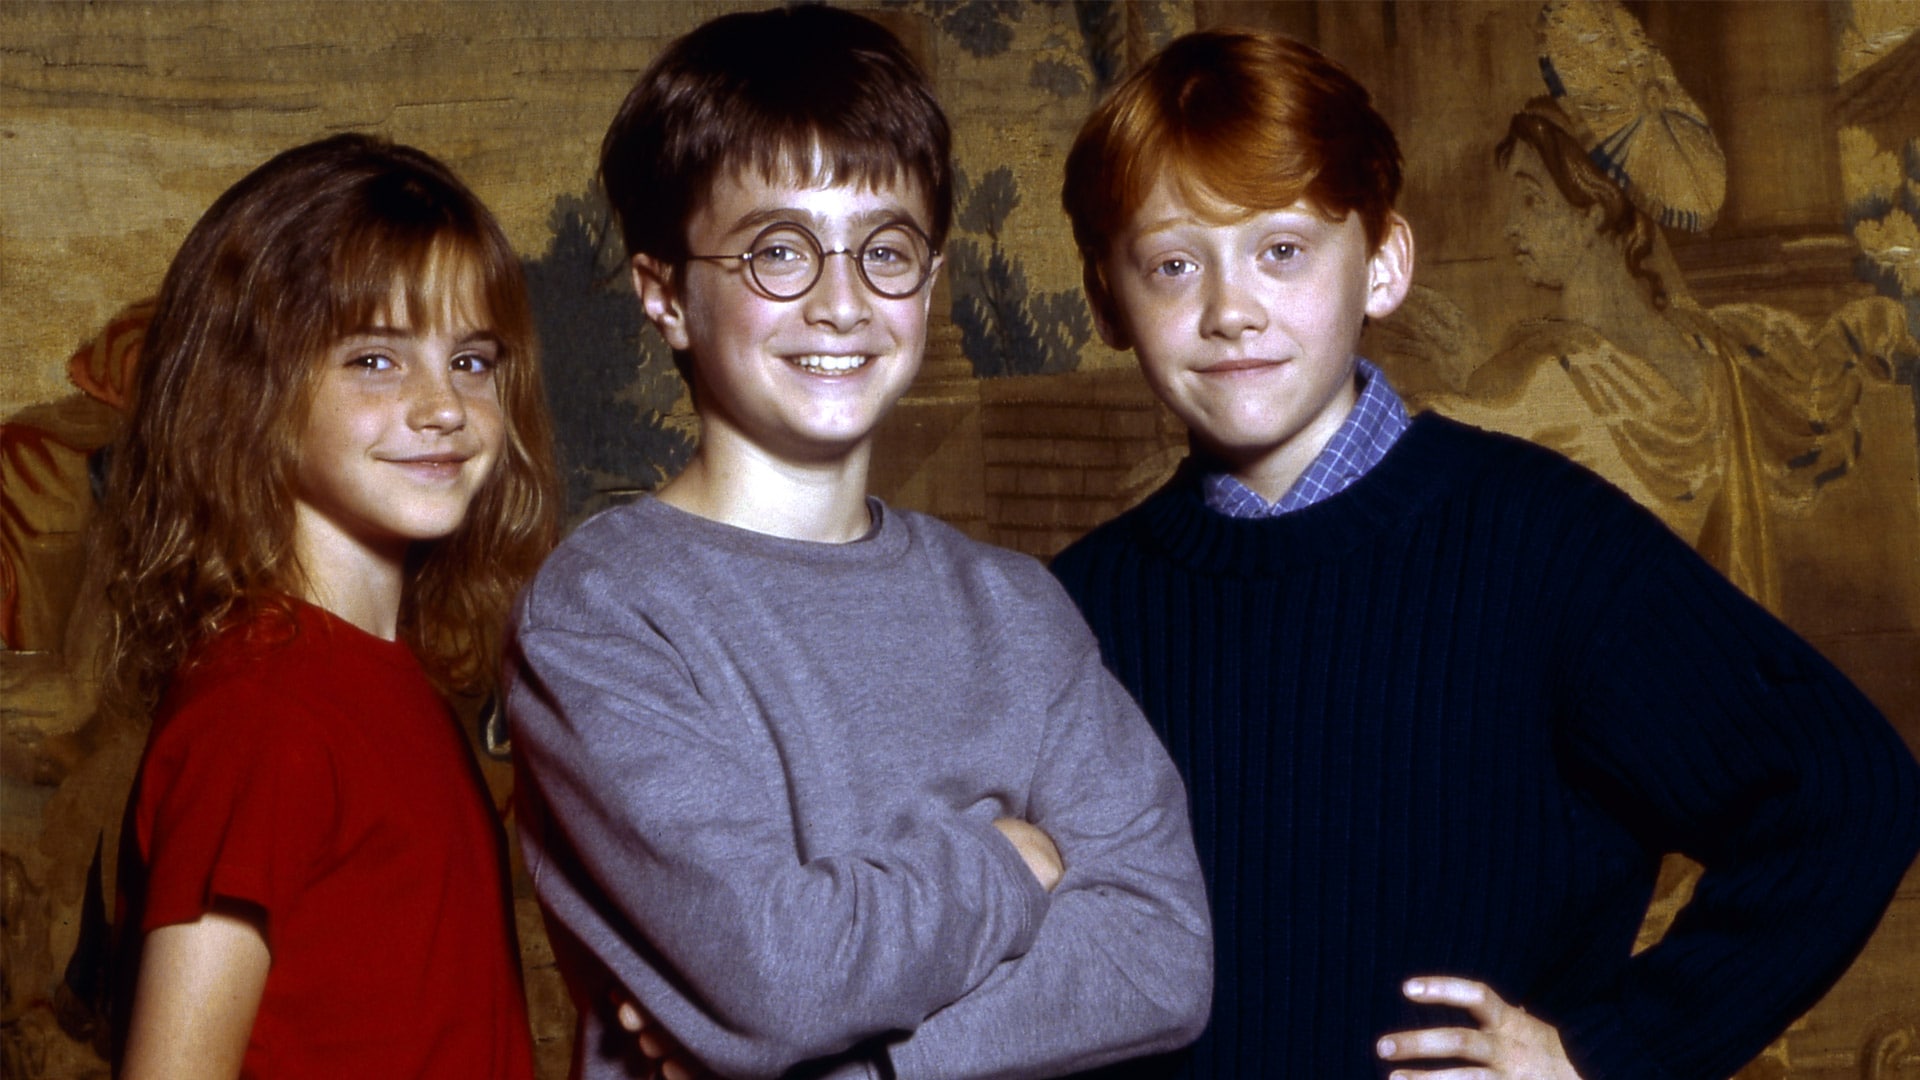 قسمت ویژه هری پاتر با نام Harry Potter 20th Anniversary: Return to Hogwarts به مناسبت بیستمین سالگرد شروع این فرانچایز